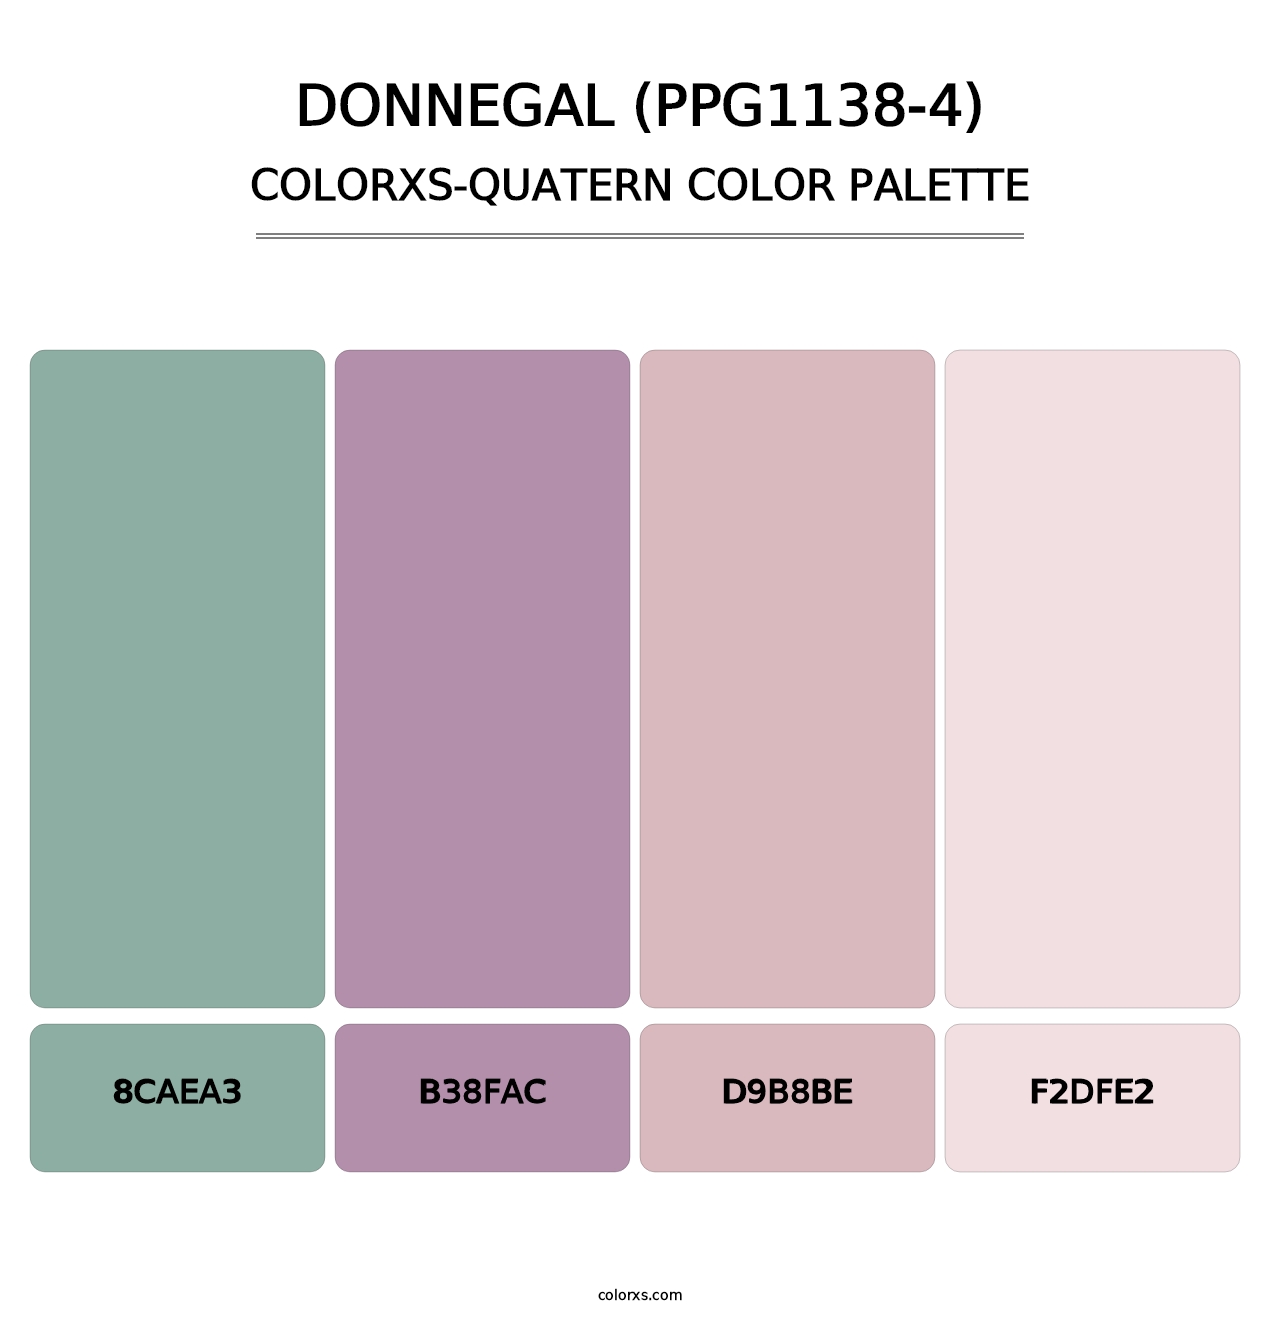 Donnegal (PPG1138-4) - Colorxs Quatern Palette